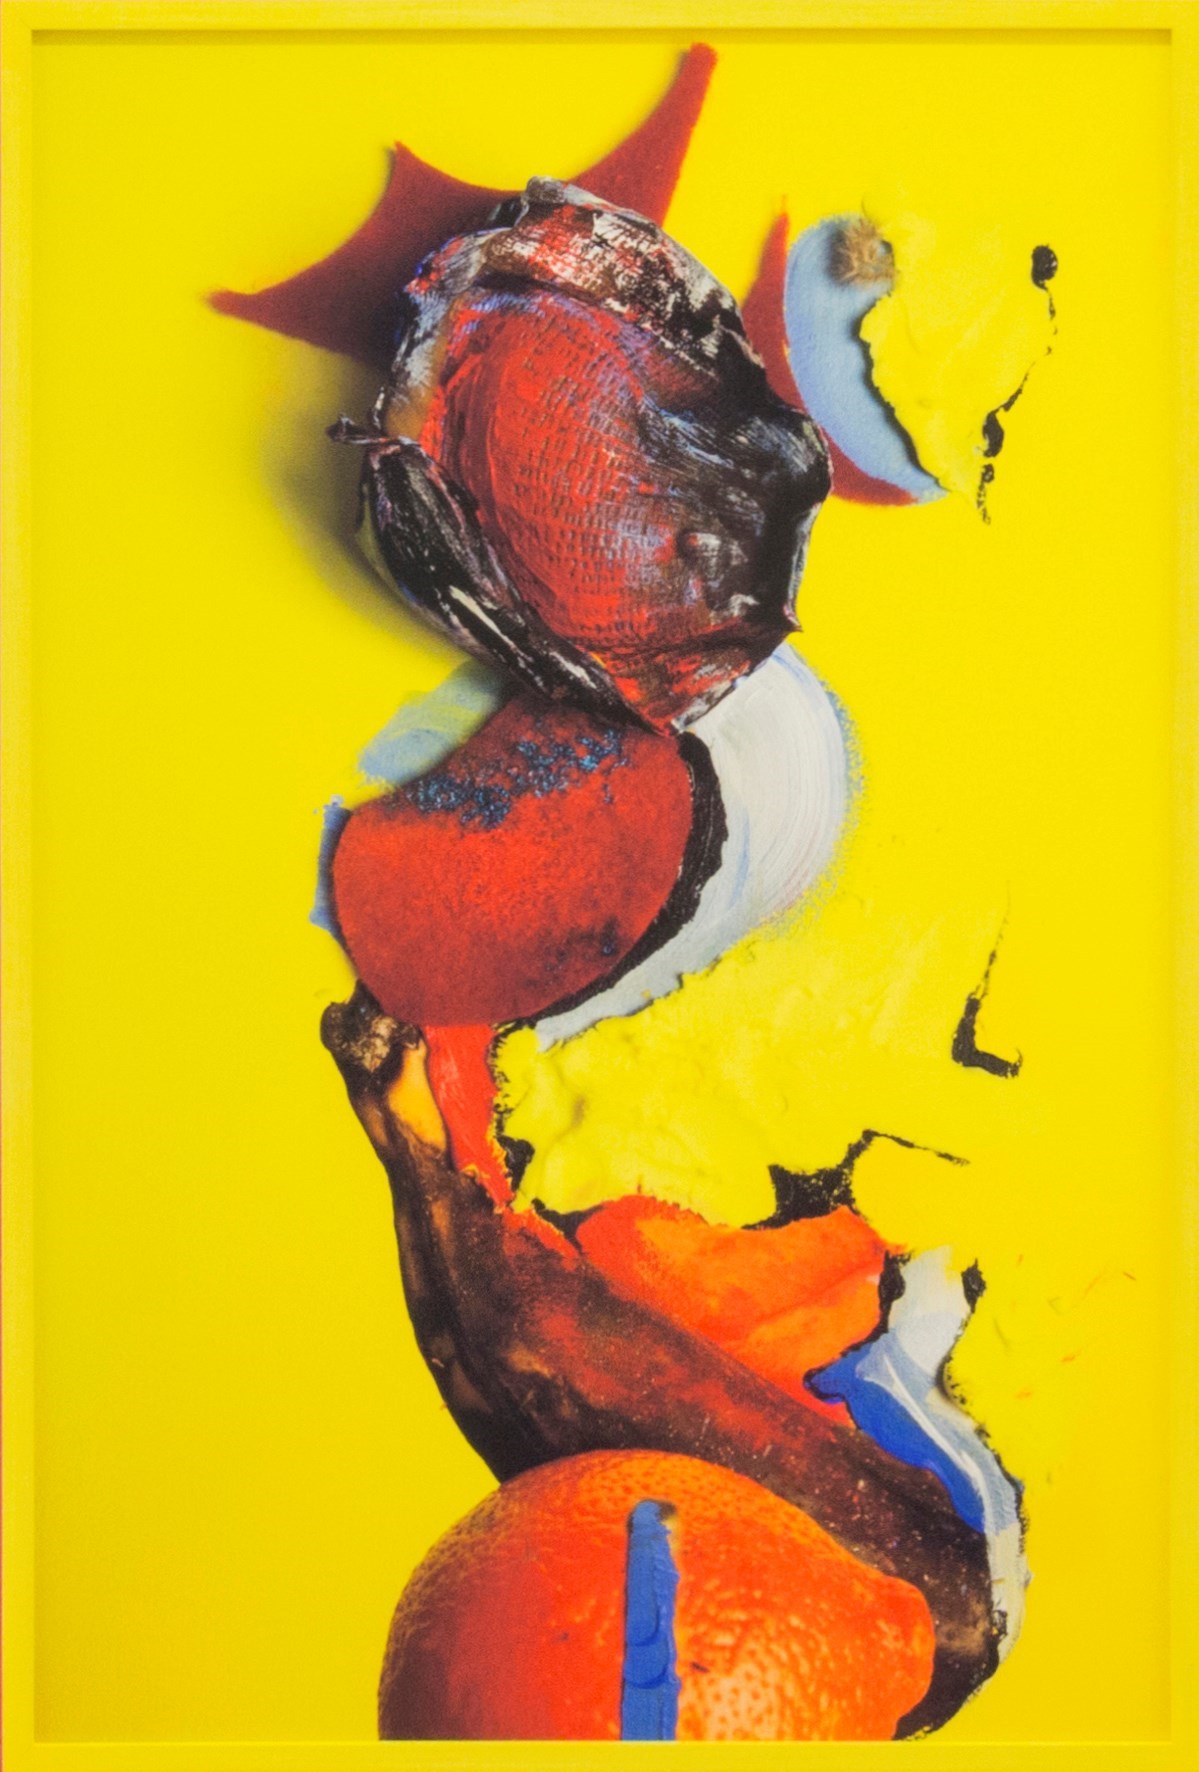 16. Lorenzo Vitturi, Untitled - Yellow Banana and 